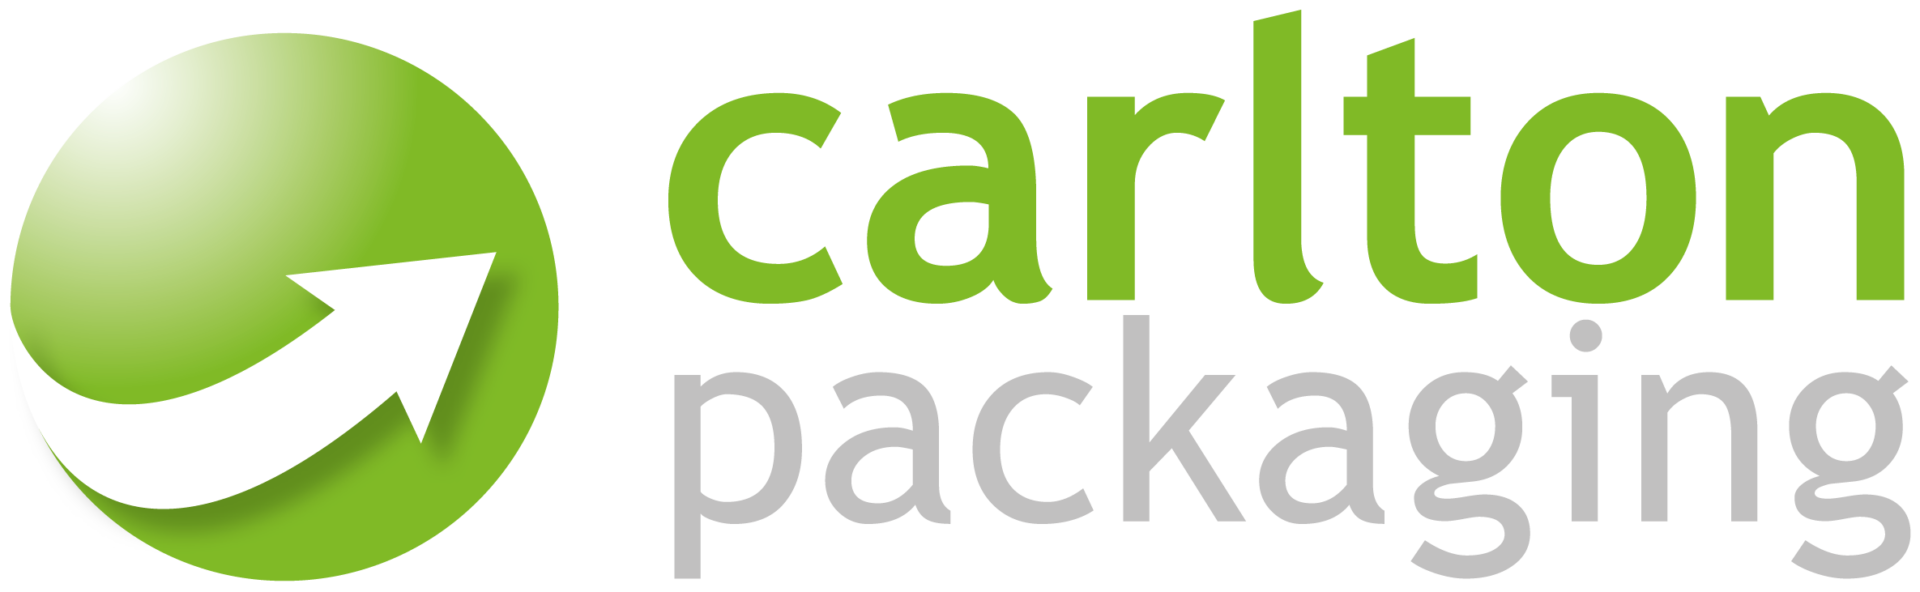 Carlton Packaging Transparent Logo